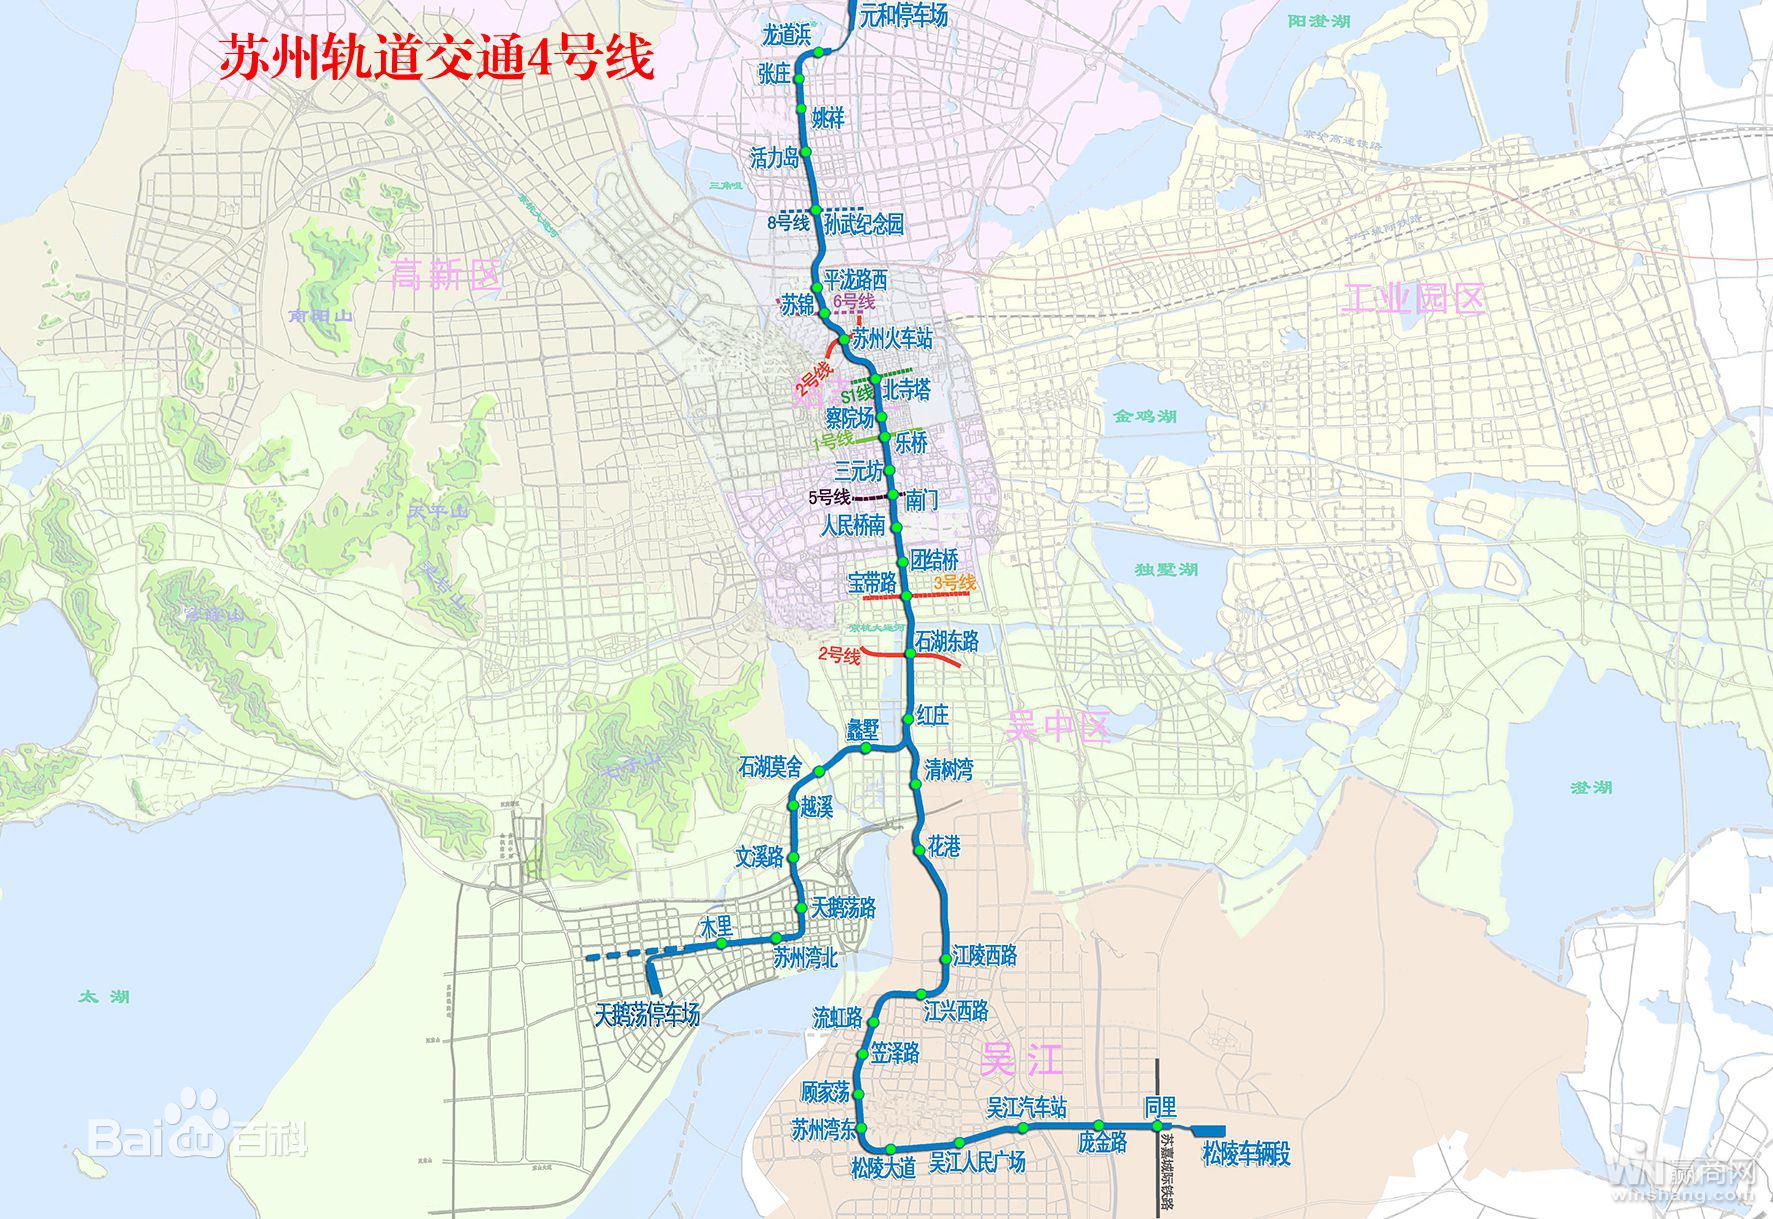 苏州地铁4号线:城市发展的骨干线 助力吴江商业发展升级